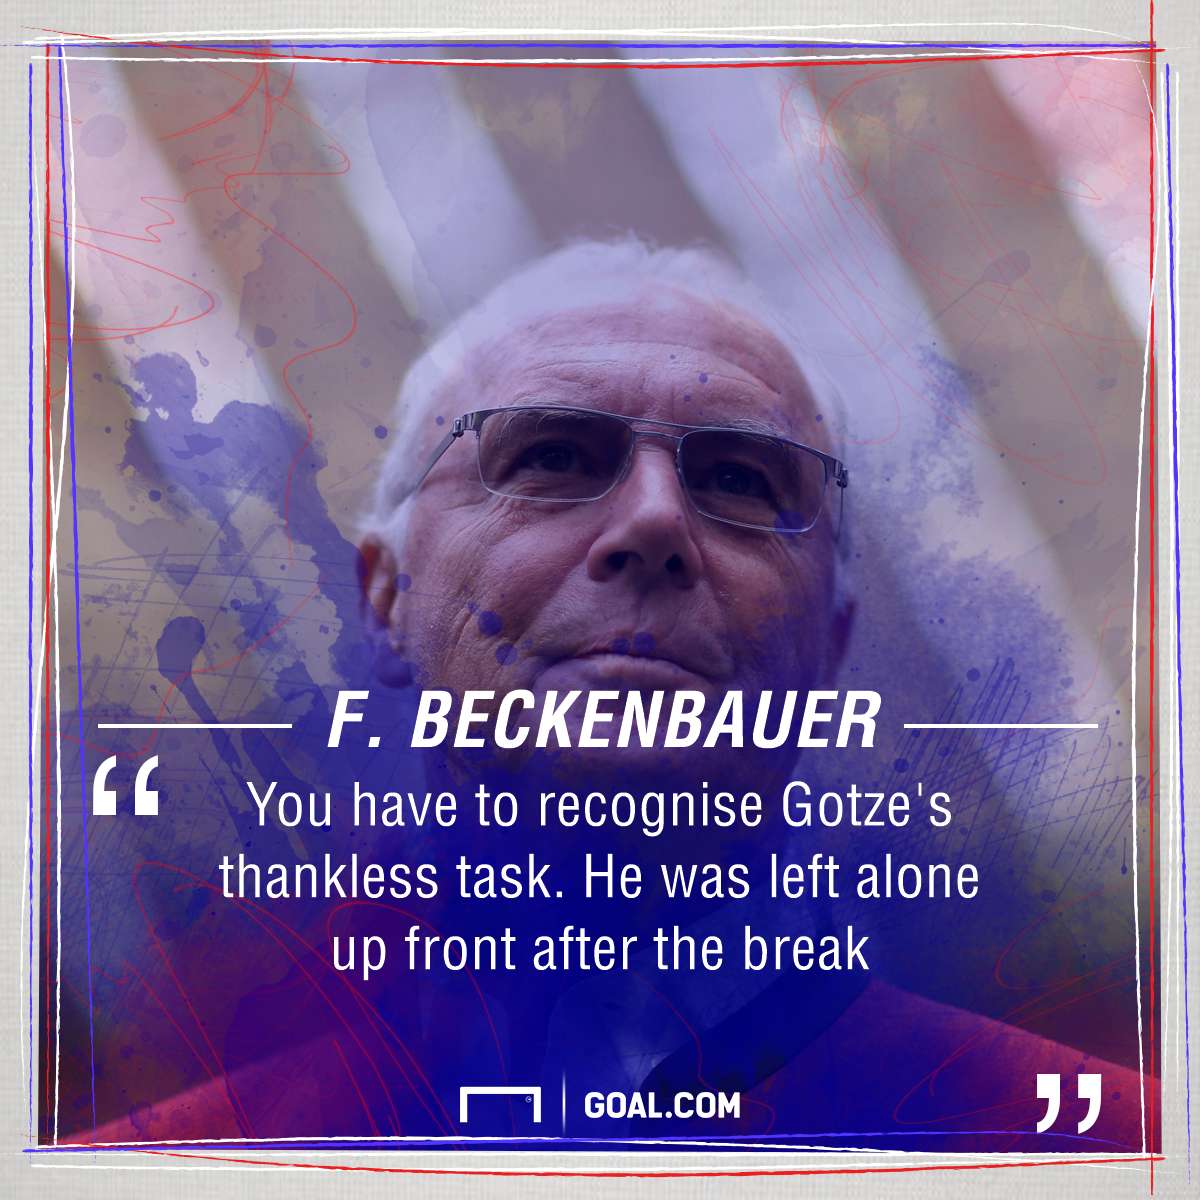 Beckenbauer on Gotze